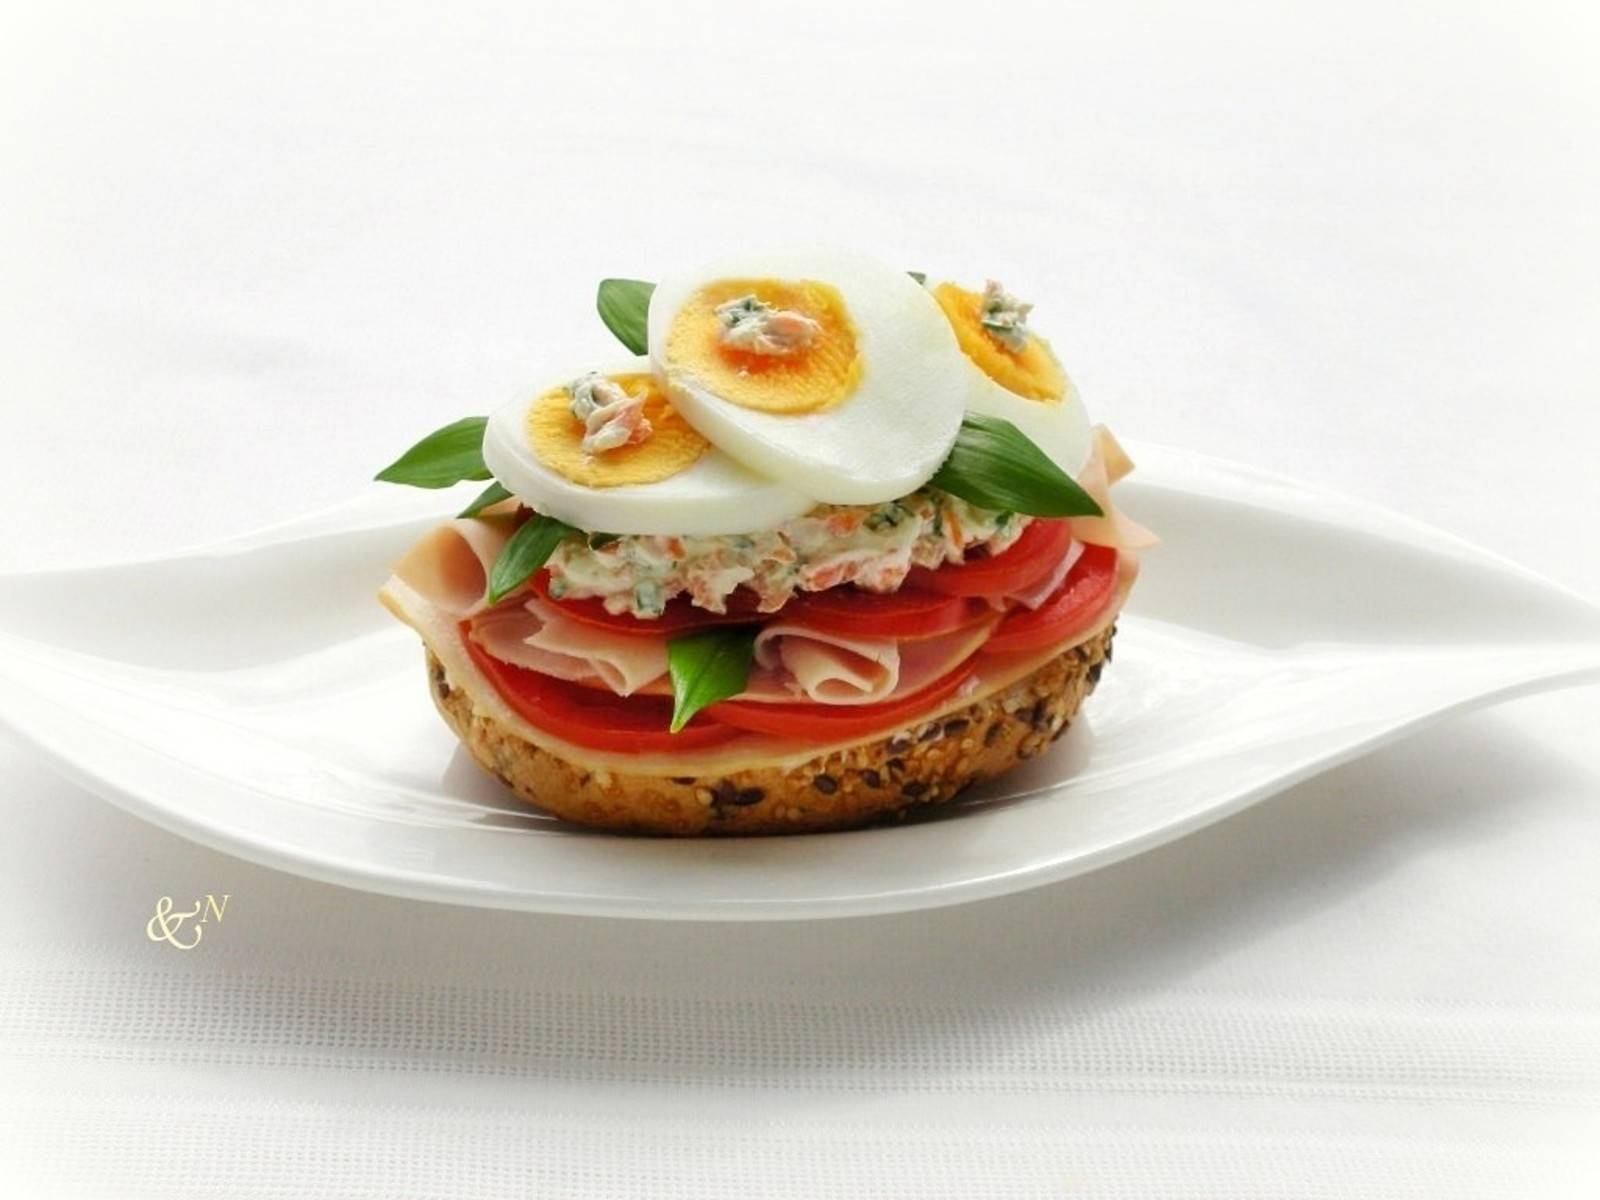 Schinken-Sandwich mit Bärlauch und Eiern